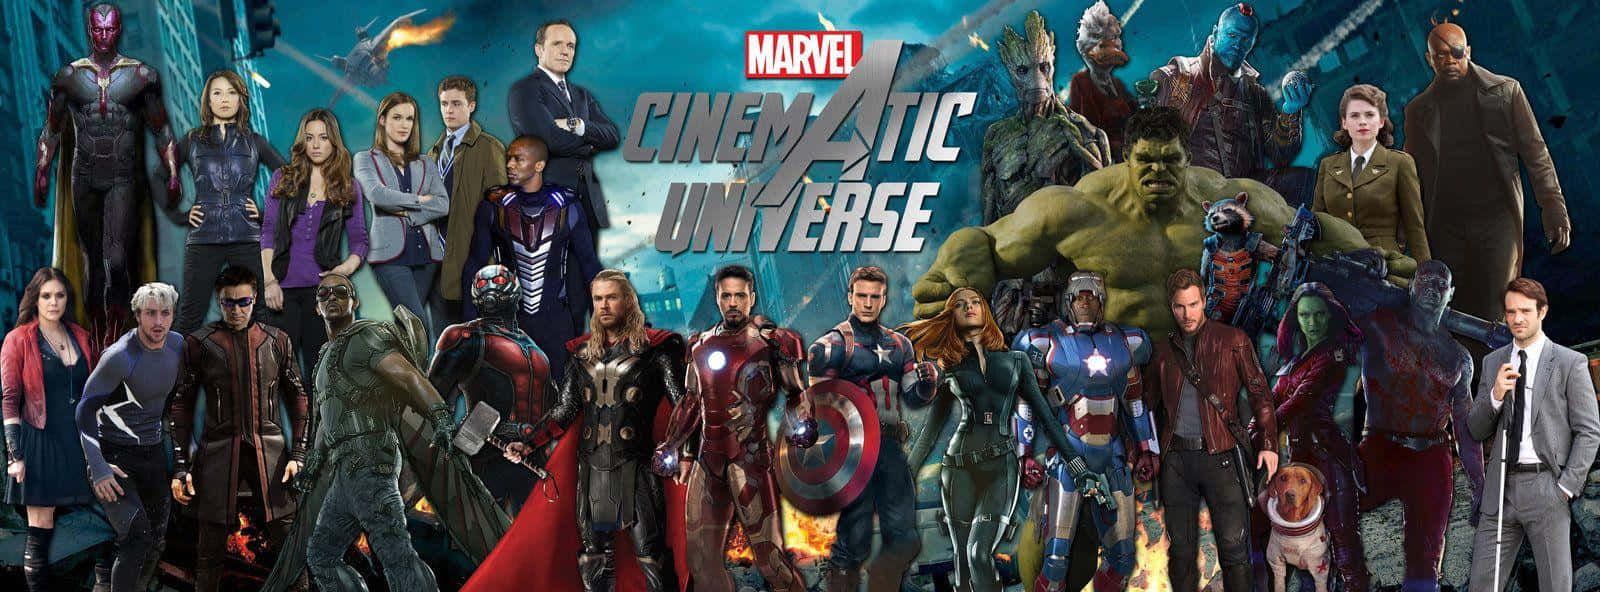 Marveluniversumet Med Alla Avengers-superhjältar. Wallpaper